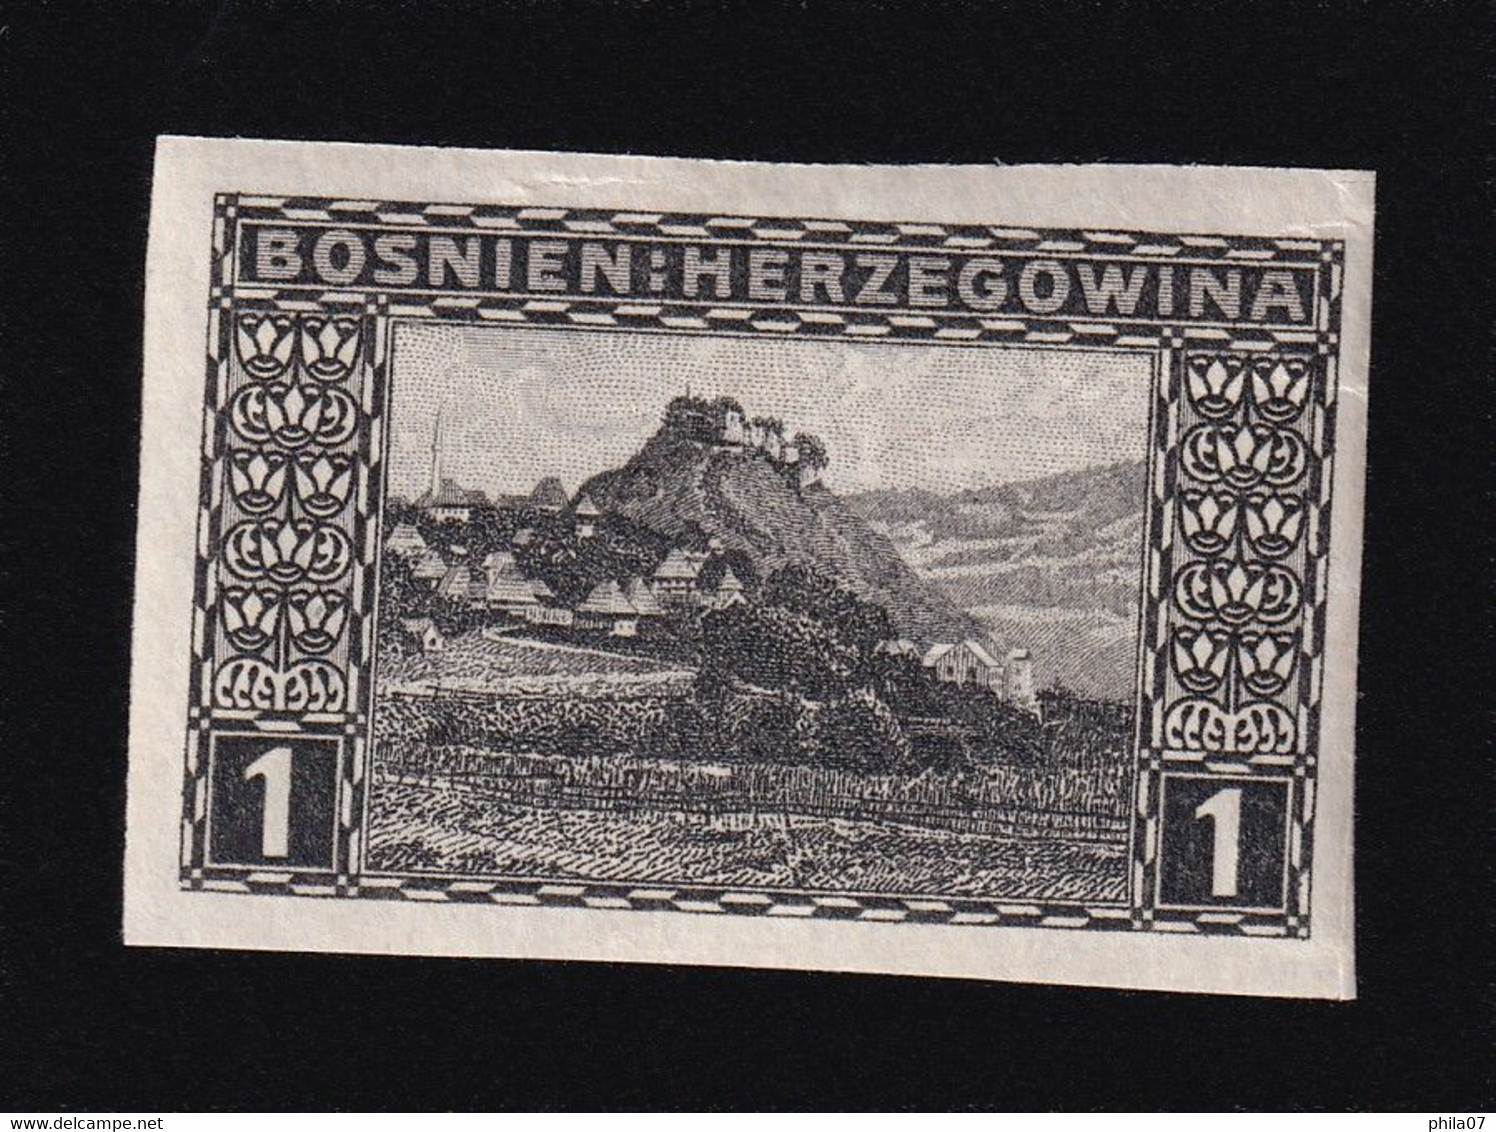 BOSNIA AND HERZEGOVINA - Landscape Stamp 1 Heller, Imperforate Stamp, MNH - Bosnie-Herzegovine